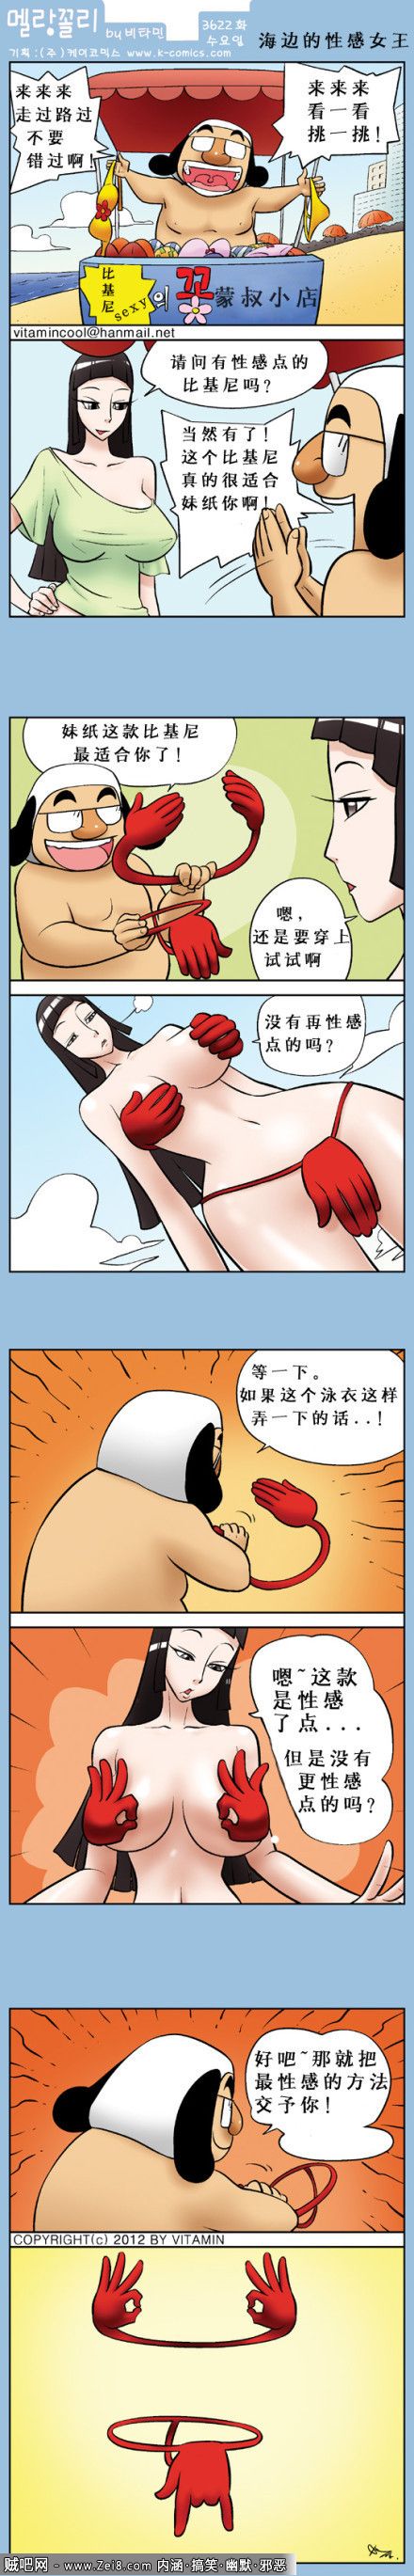 [韩国女王邪恶漫画]：情趣泳衣